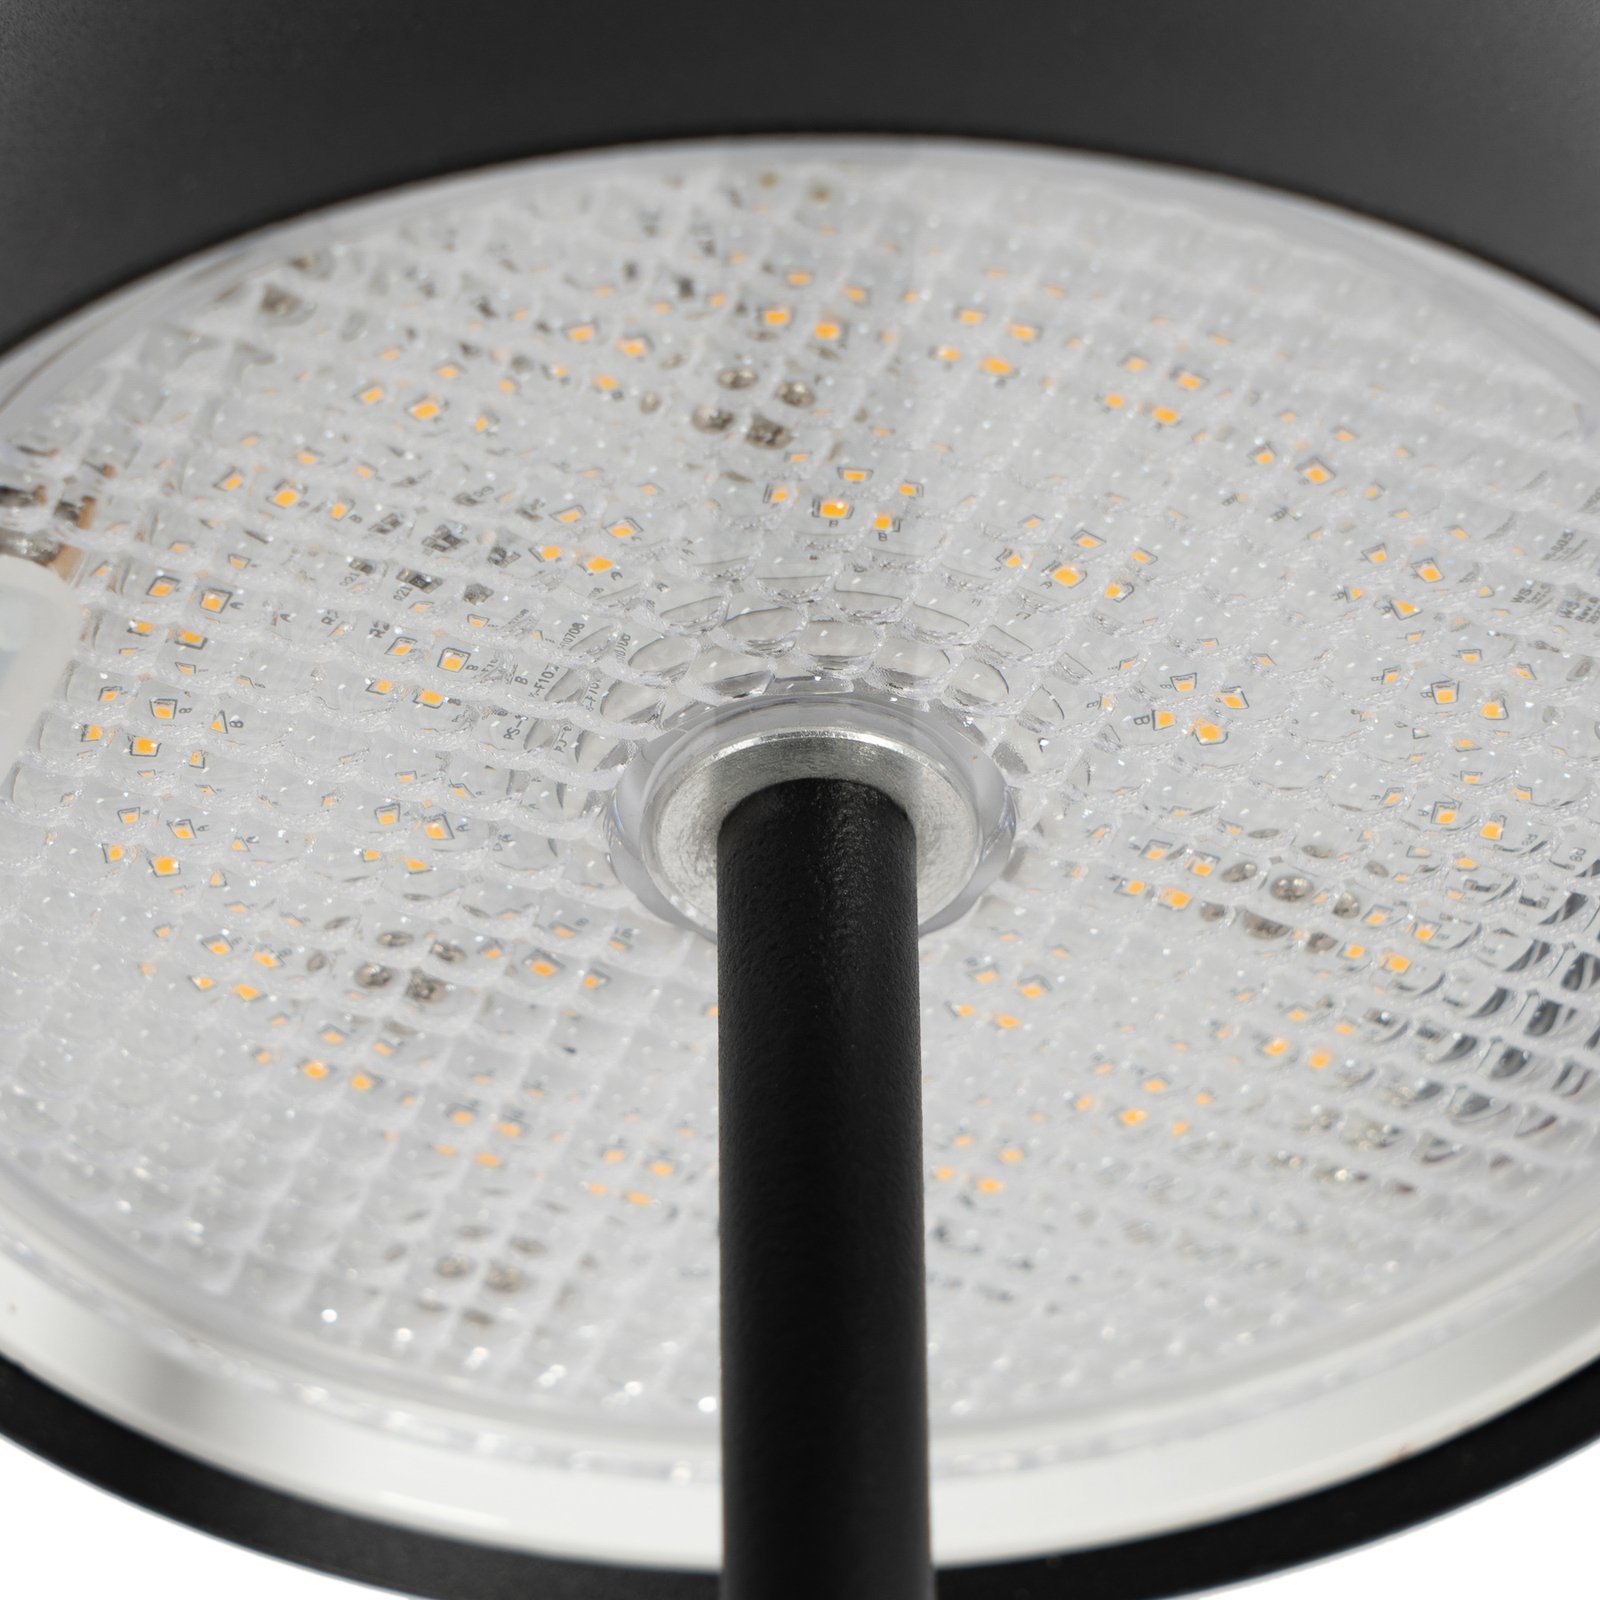 Lindby LED genopladelig bordlampe Janea, kube, sort, metal